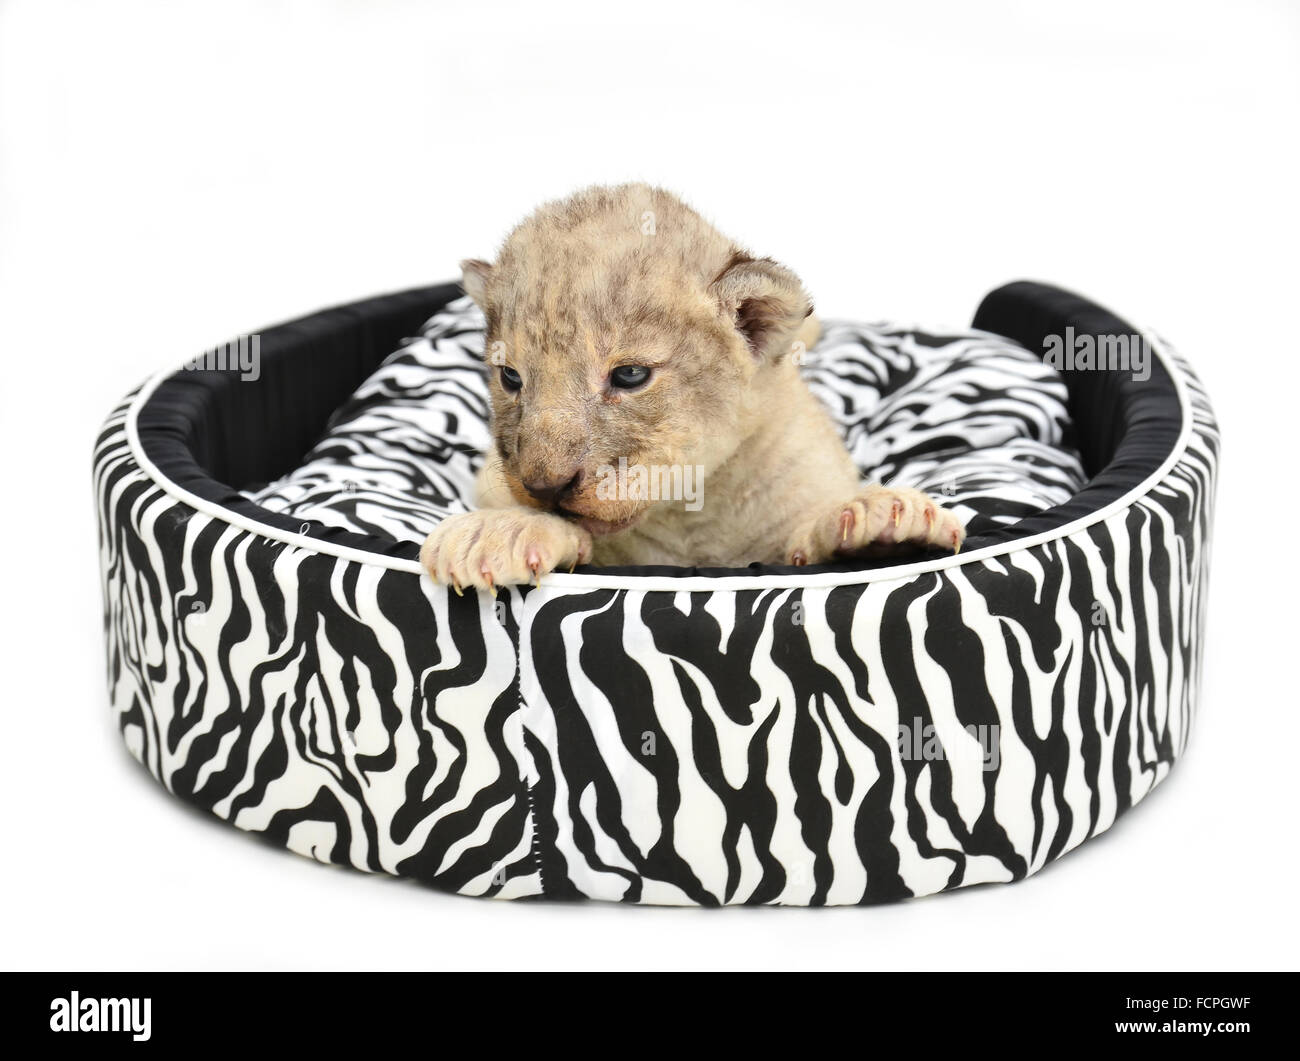 Baby lion sdraiato sul materasso isolati su sfondo bianco Foto Stock